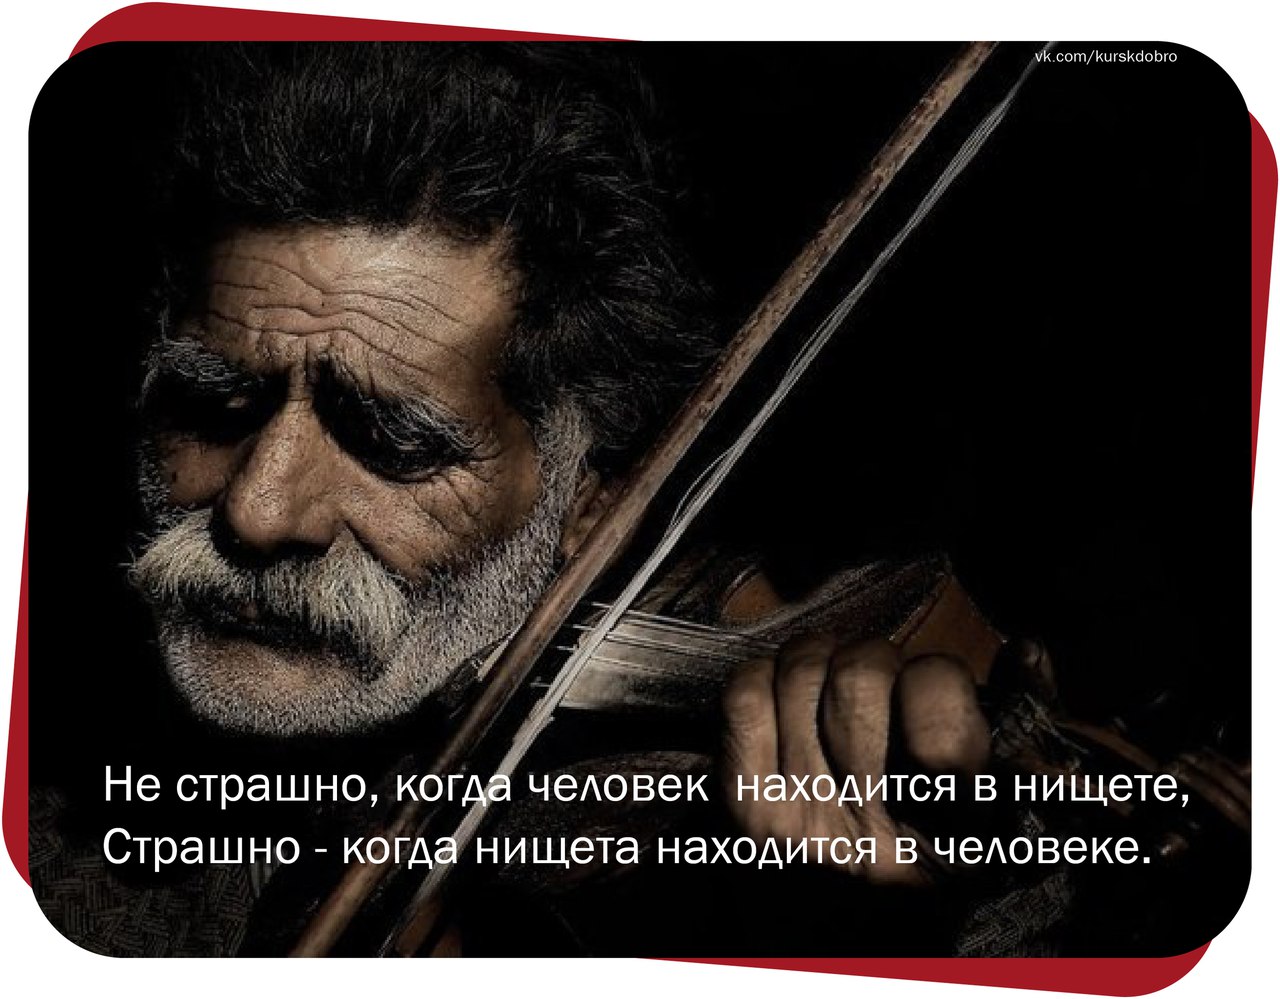 Слушать песни за душу берут. Старик скрипач. Старик со скрипкой. Пожилой скрипач. Седой скрипач.